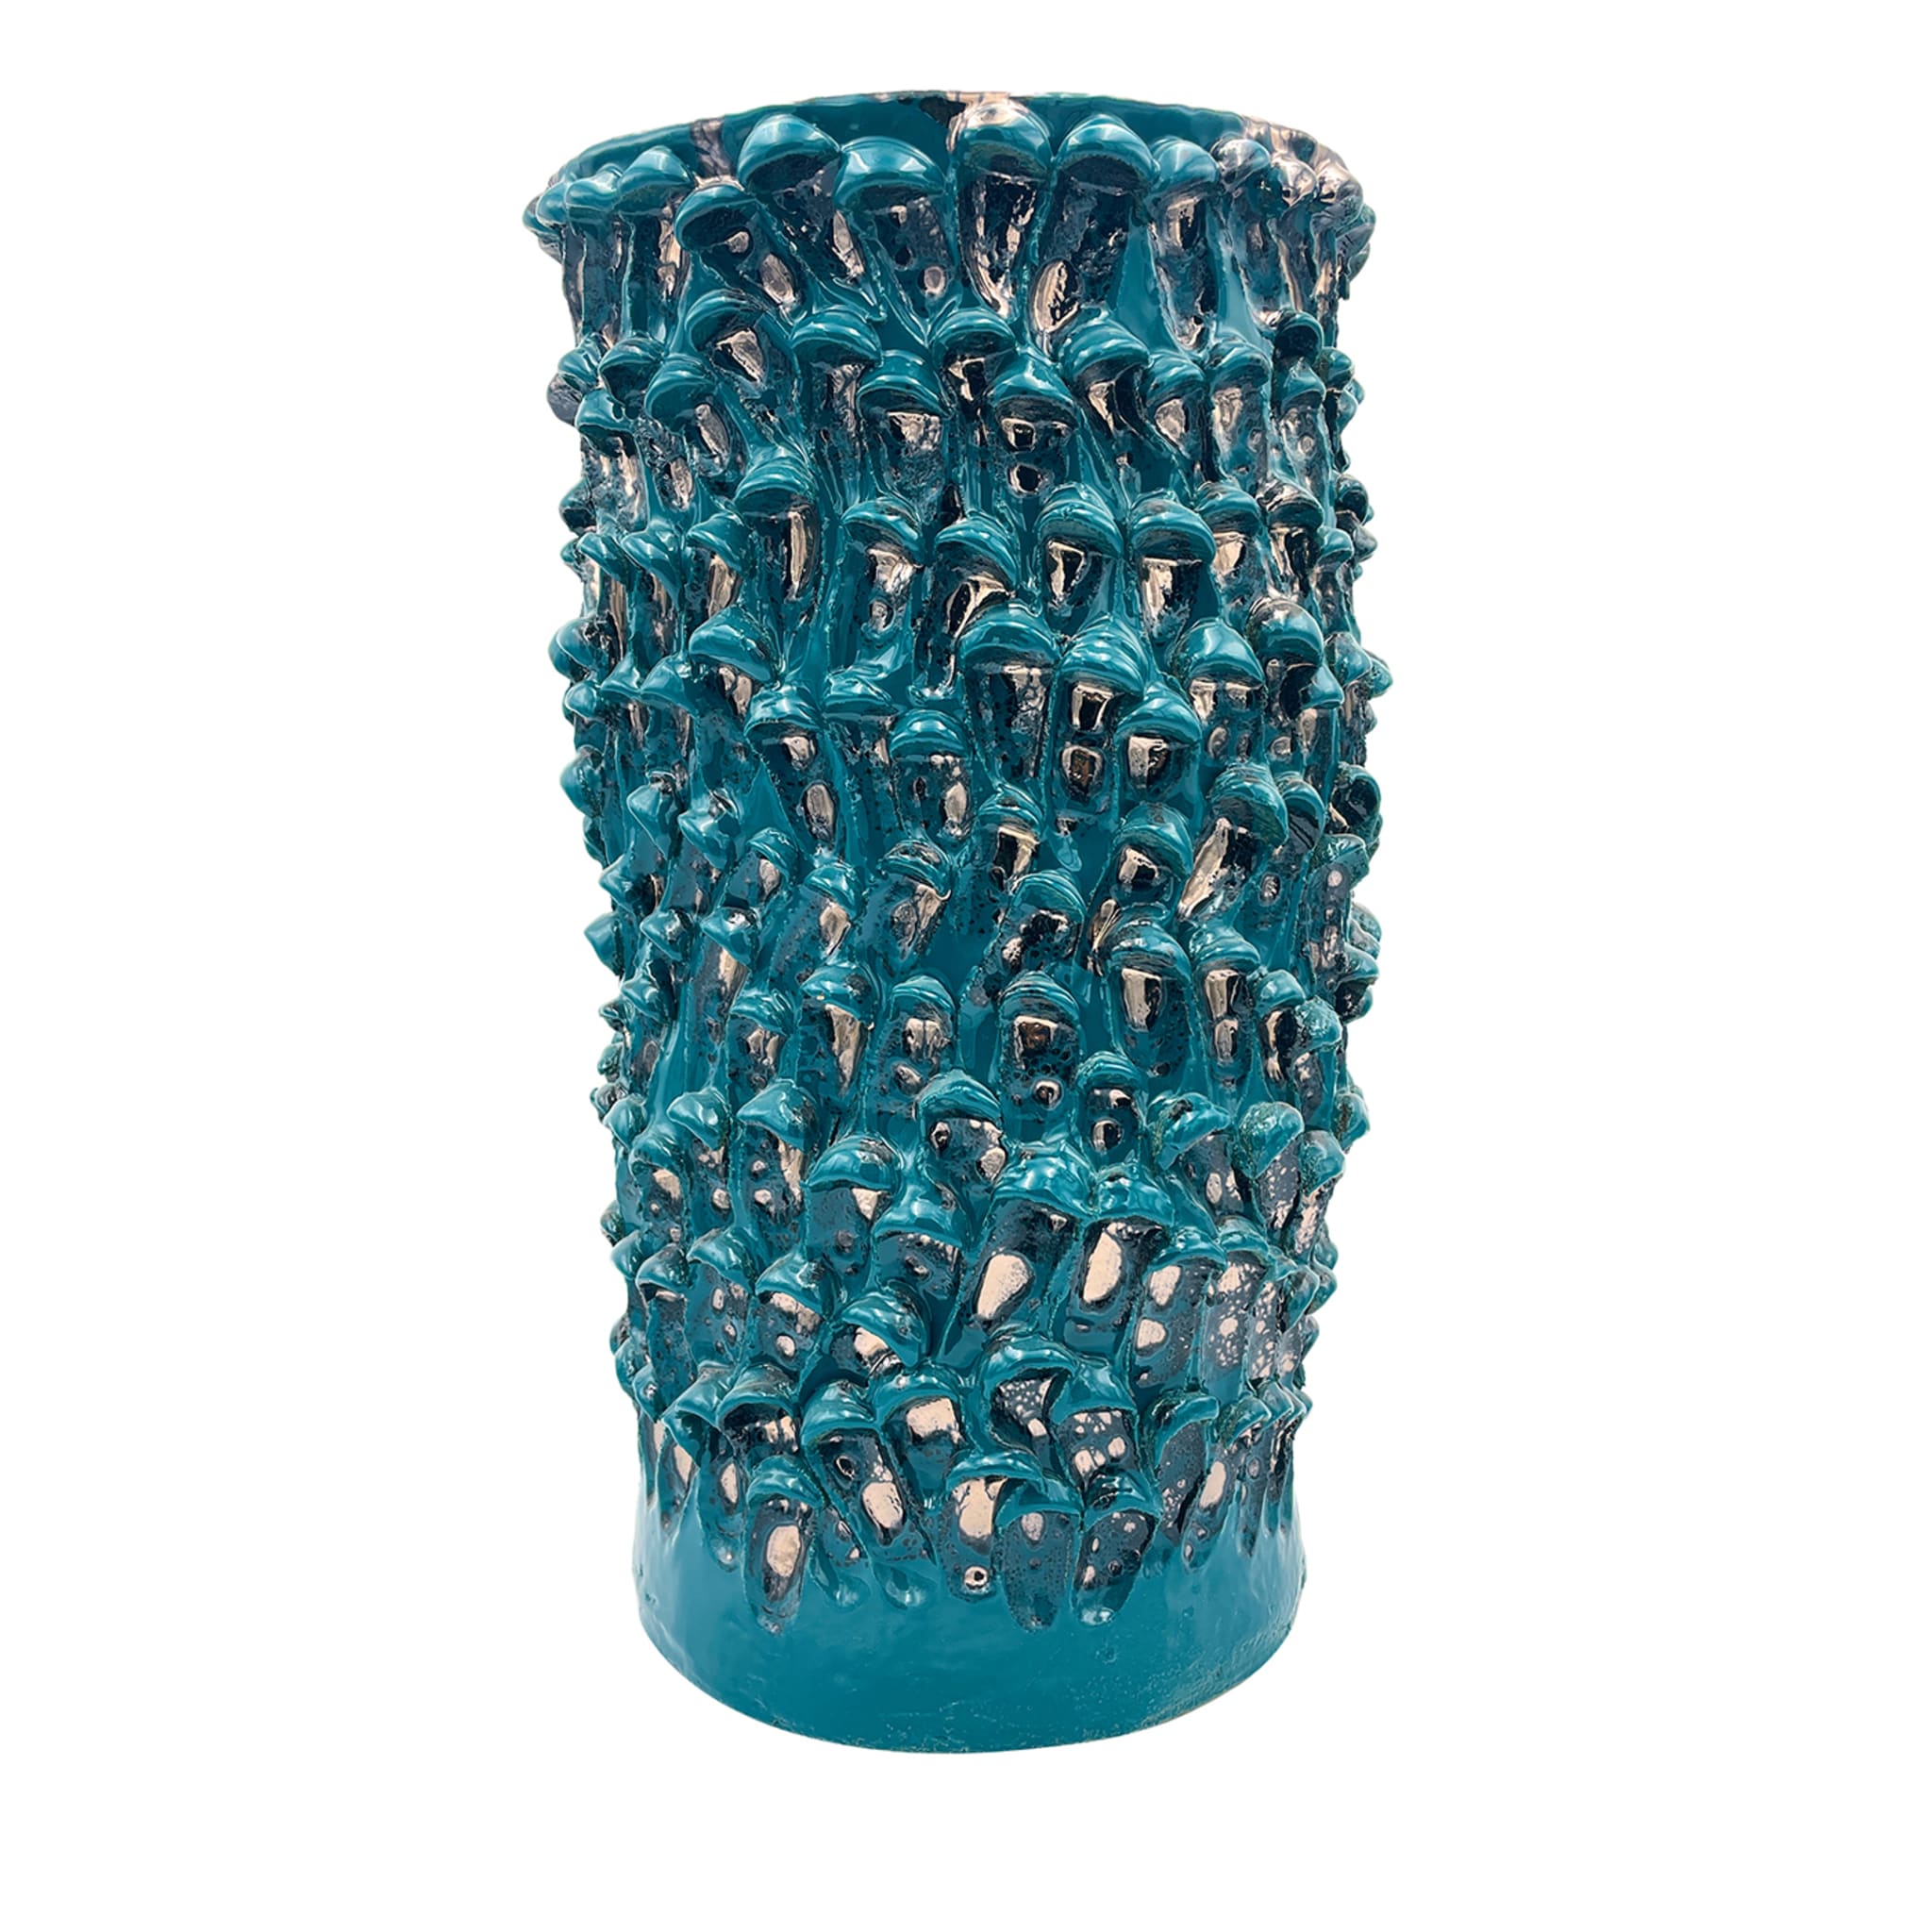 Onda Metallic Biscay Bay Vase haut - Vue principale